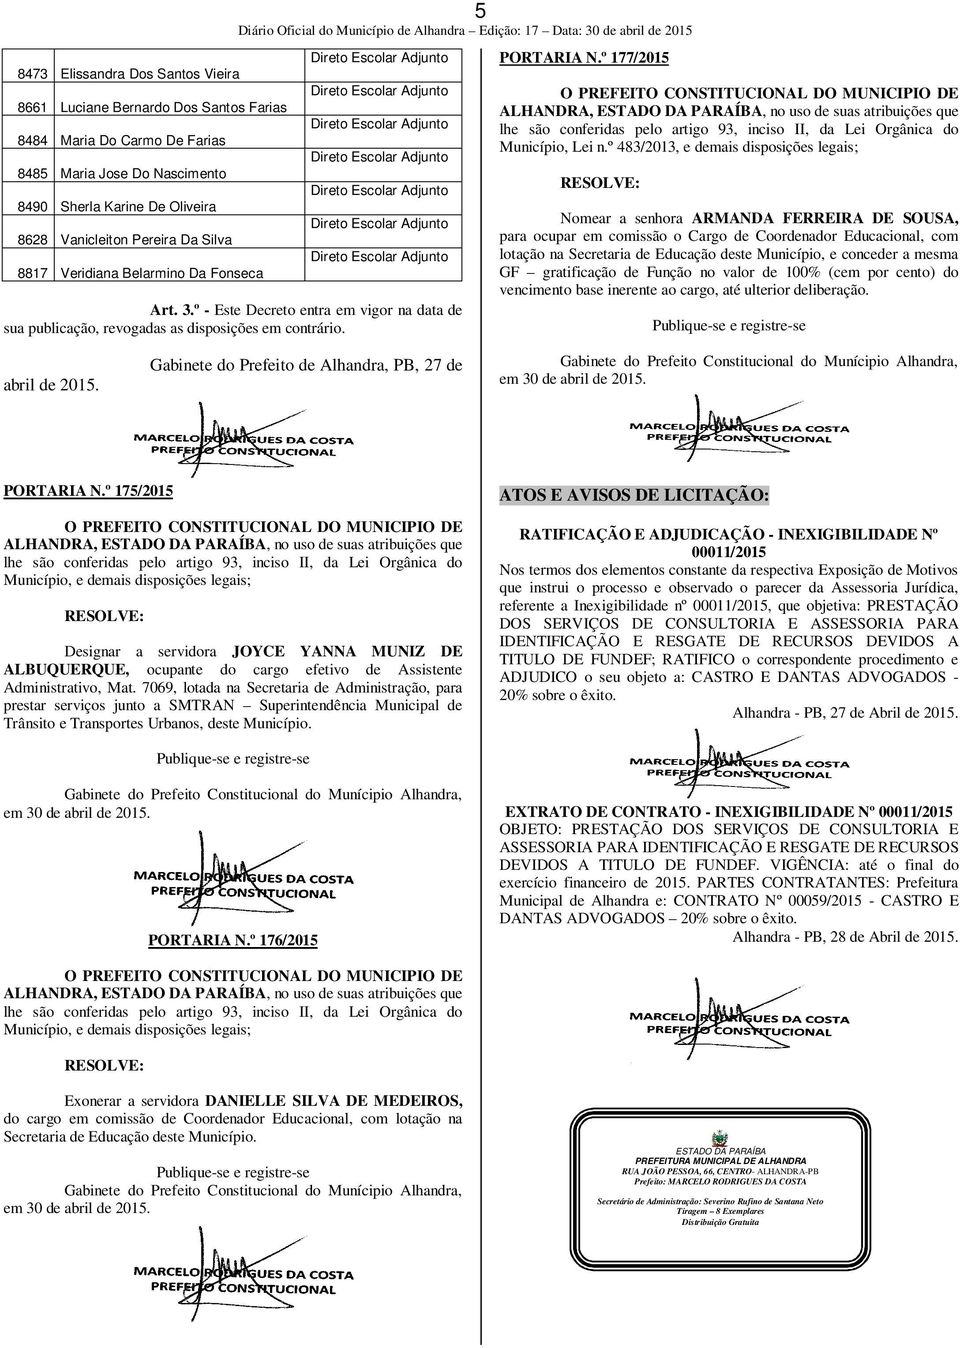 Oliveira 8628 Vanicleiton Pereira Da Silva 8817 Veridiana Belarmino Da Fonseca Art. 3.º - Este Decreto entra em vigor na data de sua publicação, revogadas as disposições em contrário.